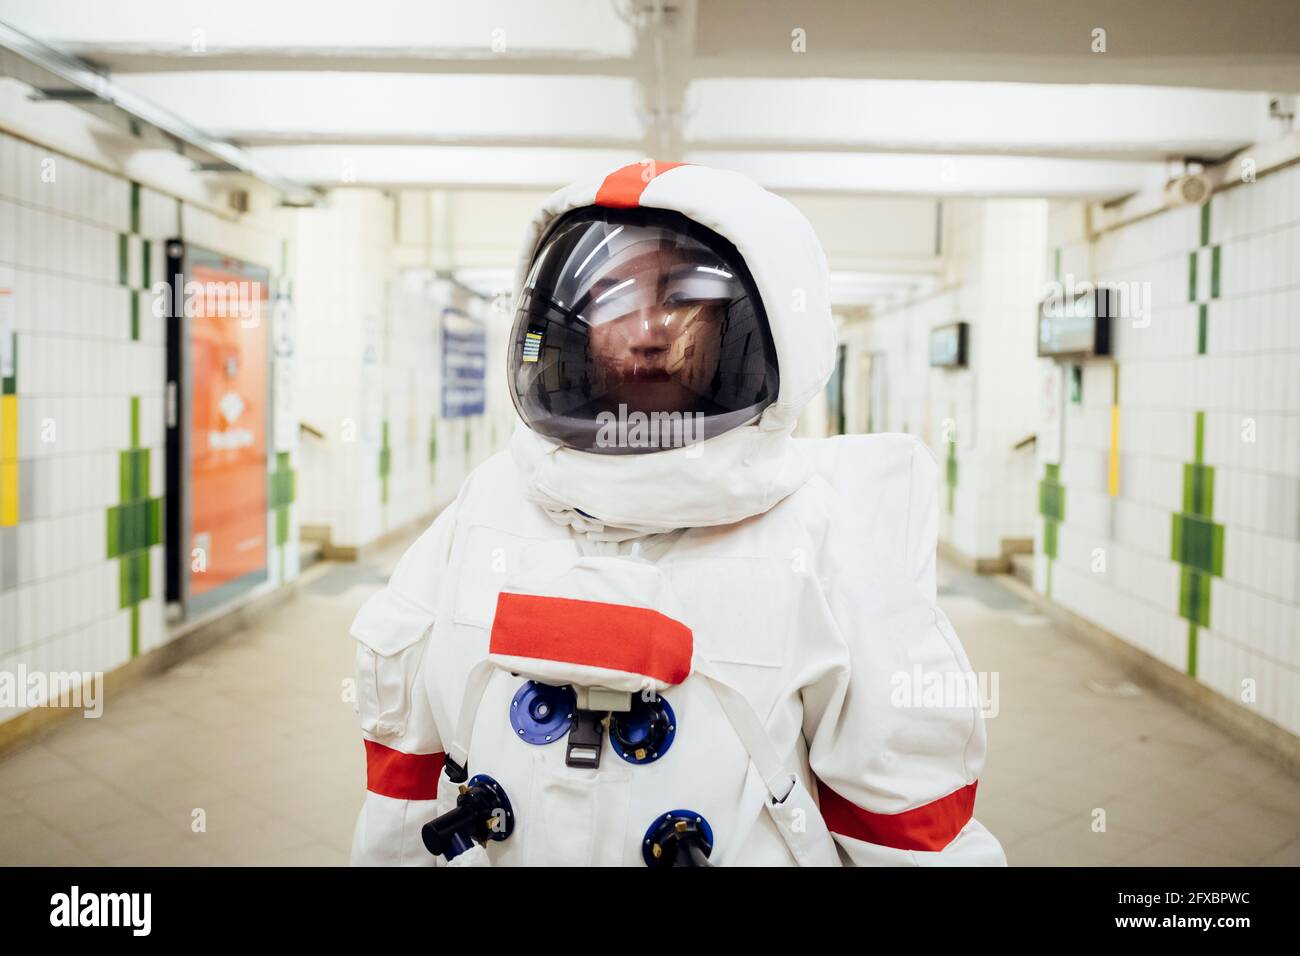 Junge Astronautin, die in der U-Bahn steht Stockfoto